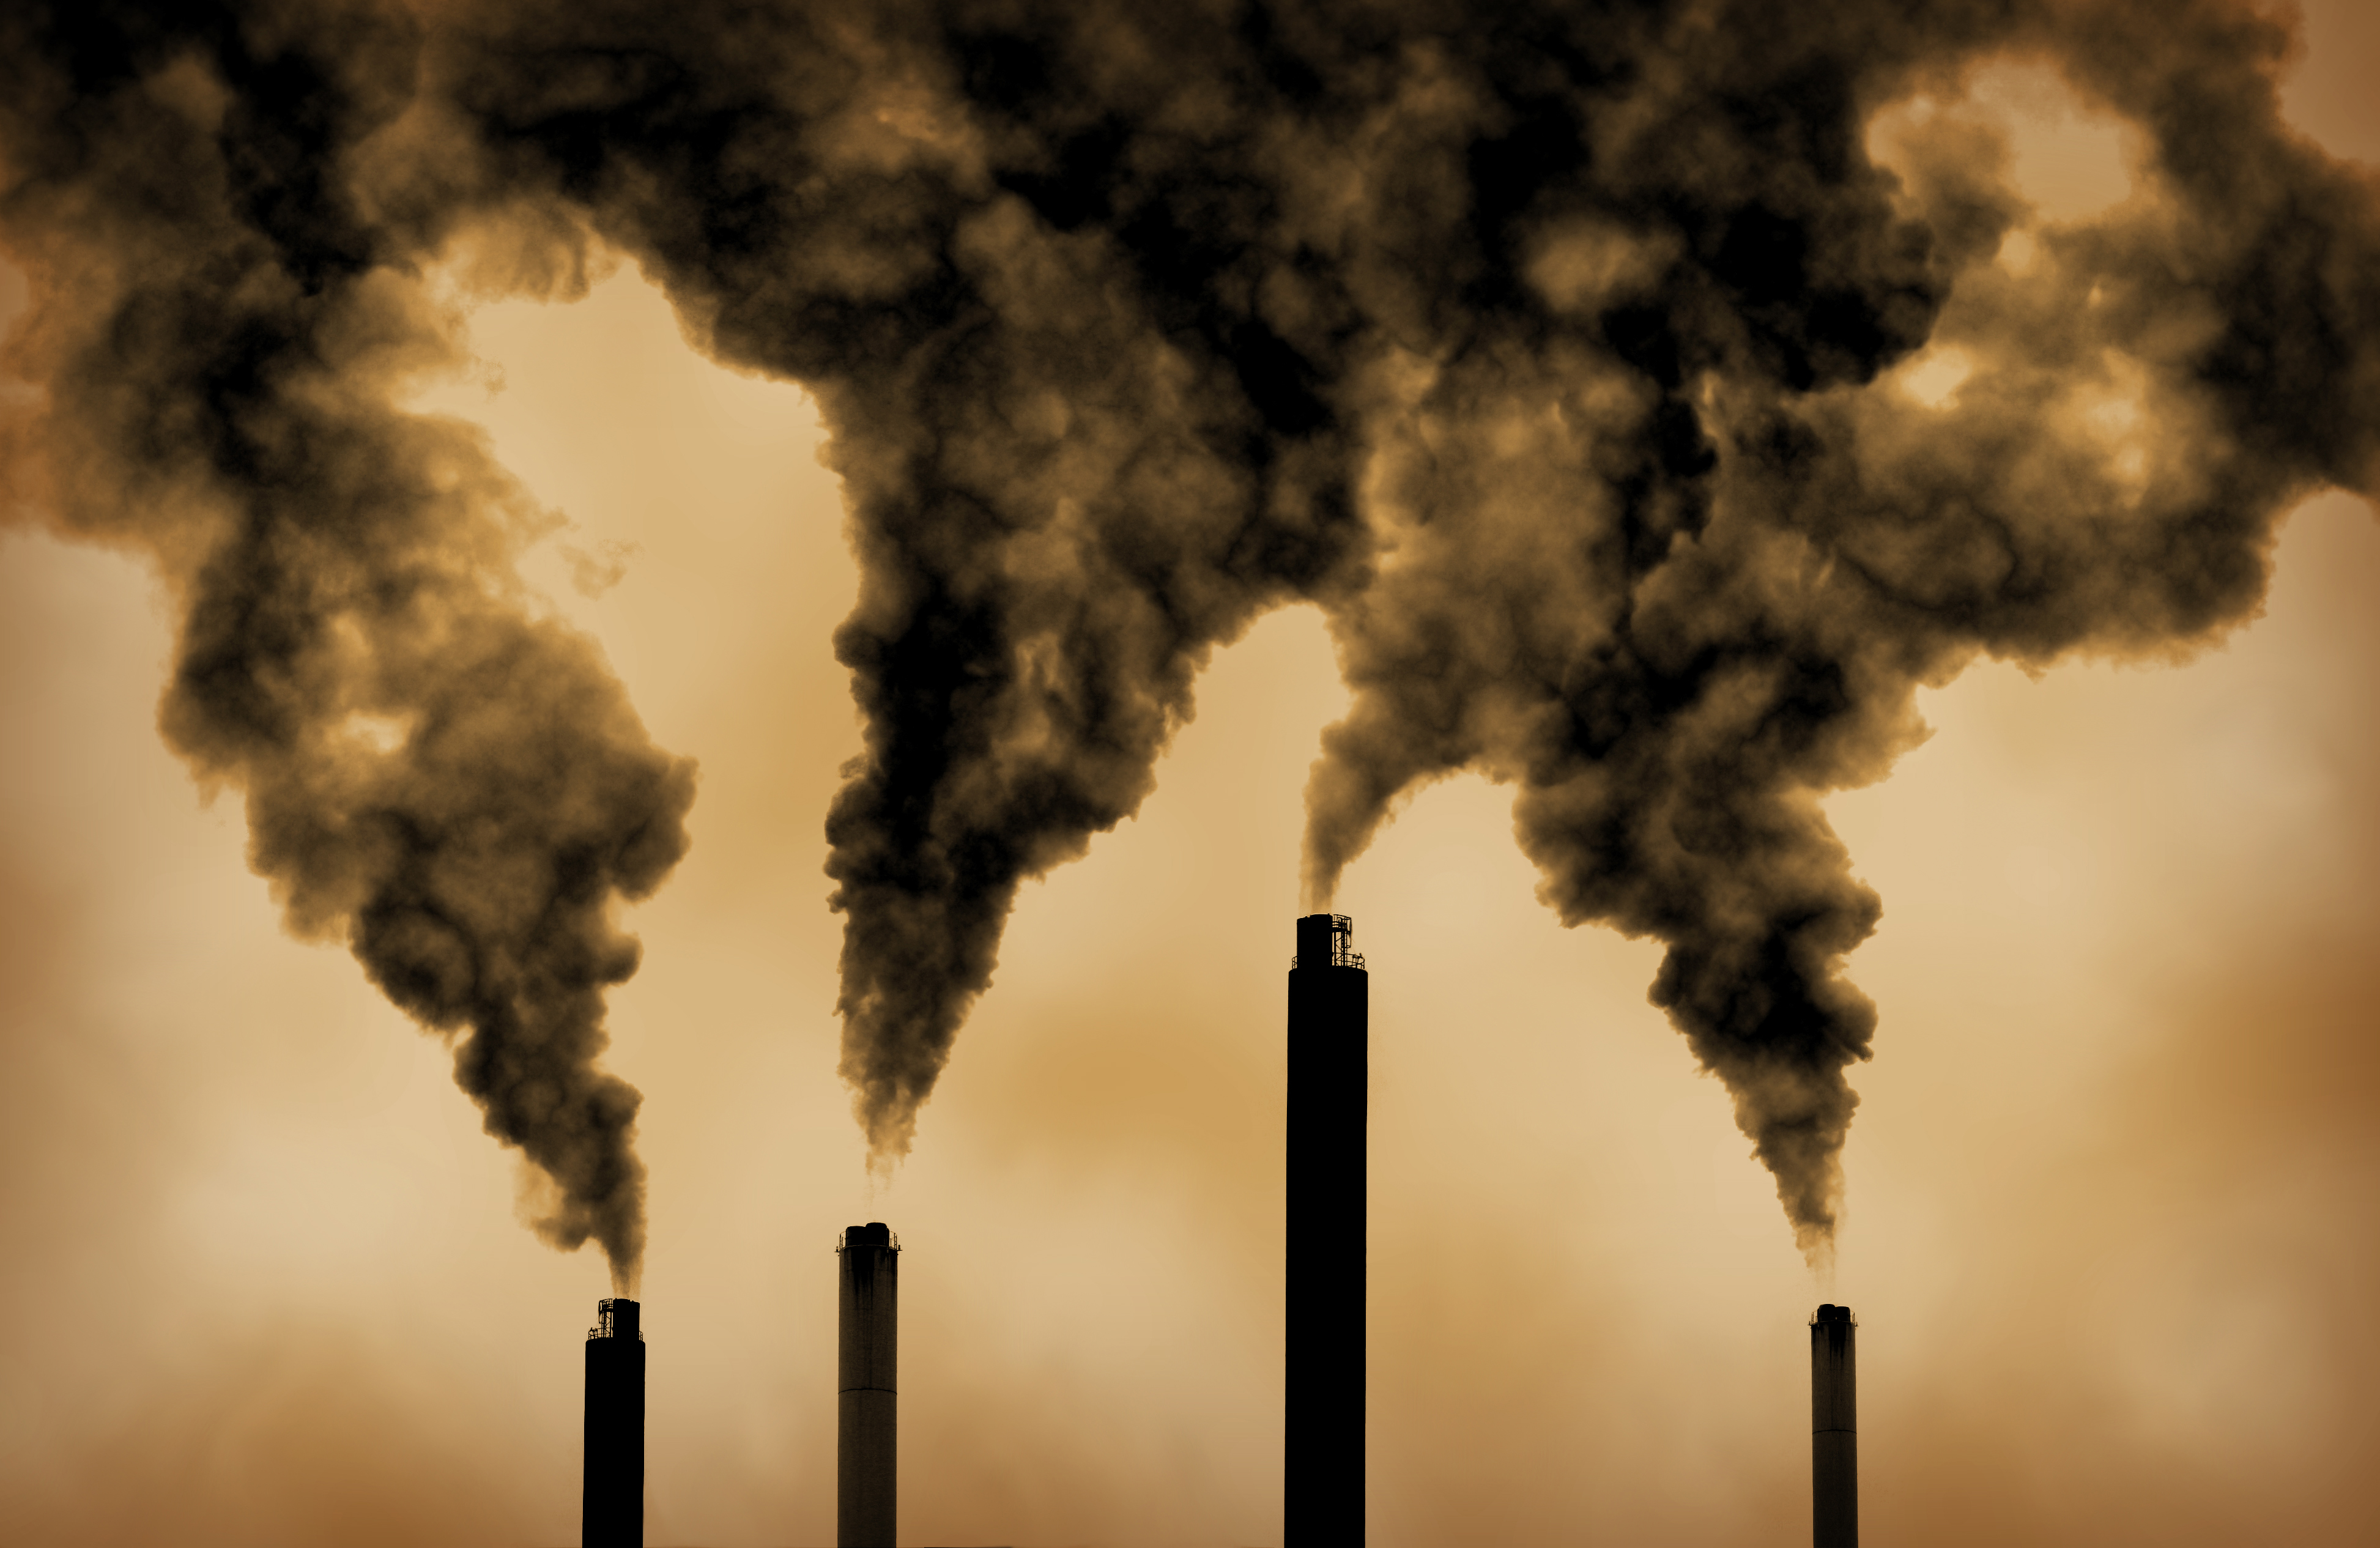 Химическое воздействие на природу. Выбросы в атмосферу. Загрязнение воздуха. Трубы завода дымят. Экология загрязнение воздуха.